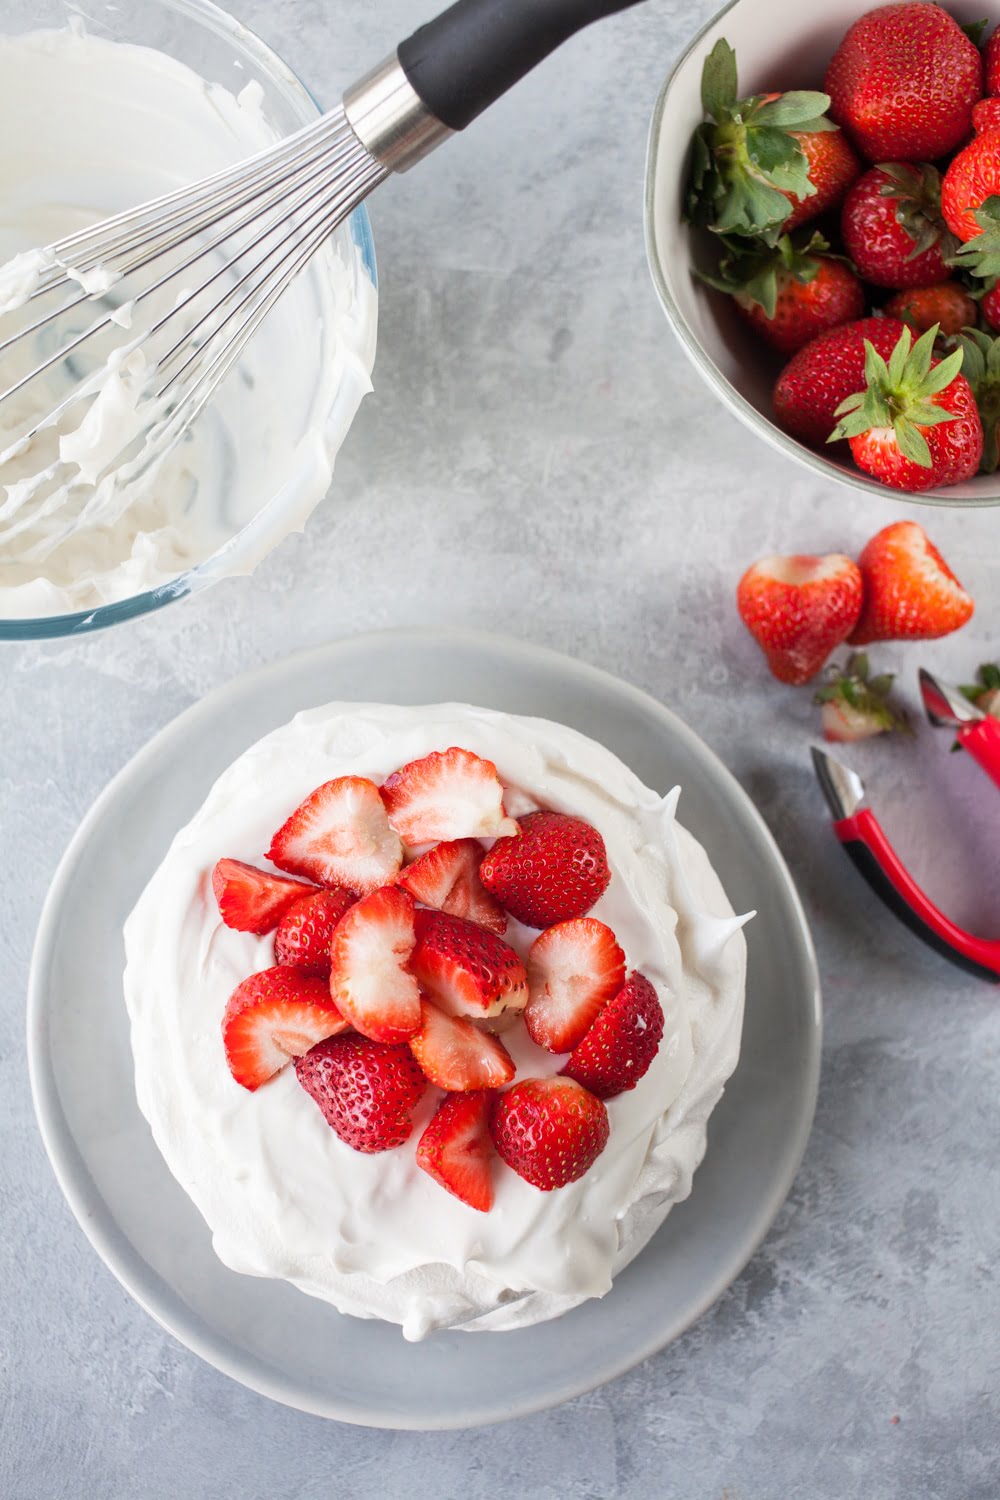 Vegan Pavlova with Strawberries & Cream